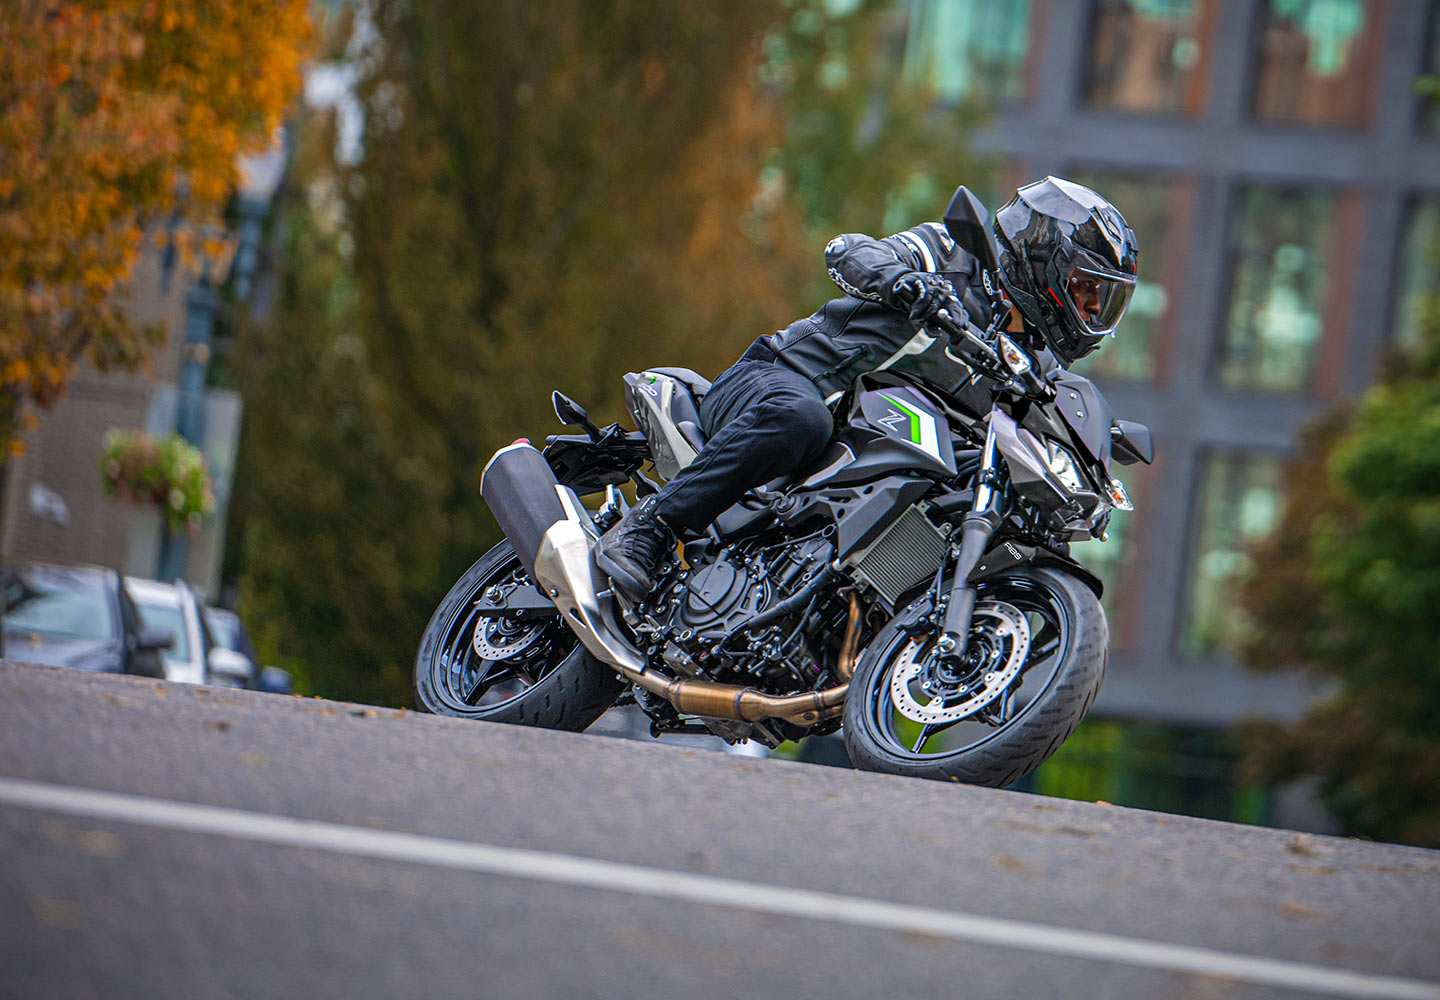 Kawasaki Z500| Supernaked Motorcycle | Aggressive Styling